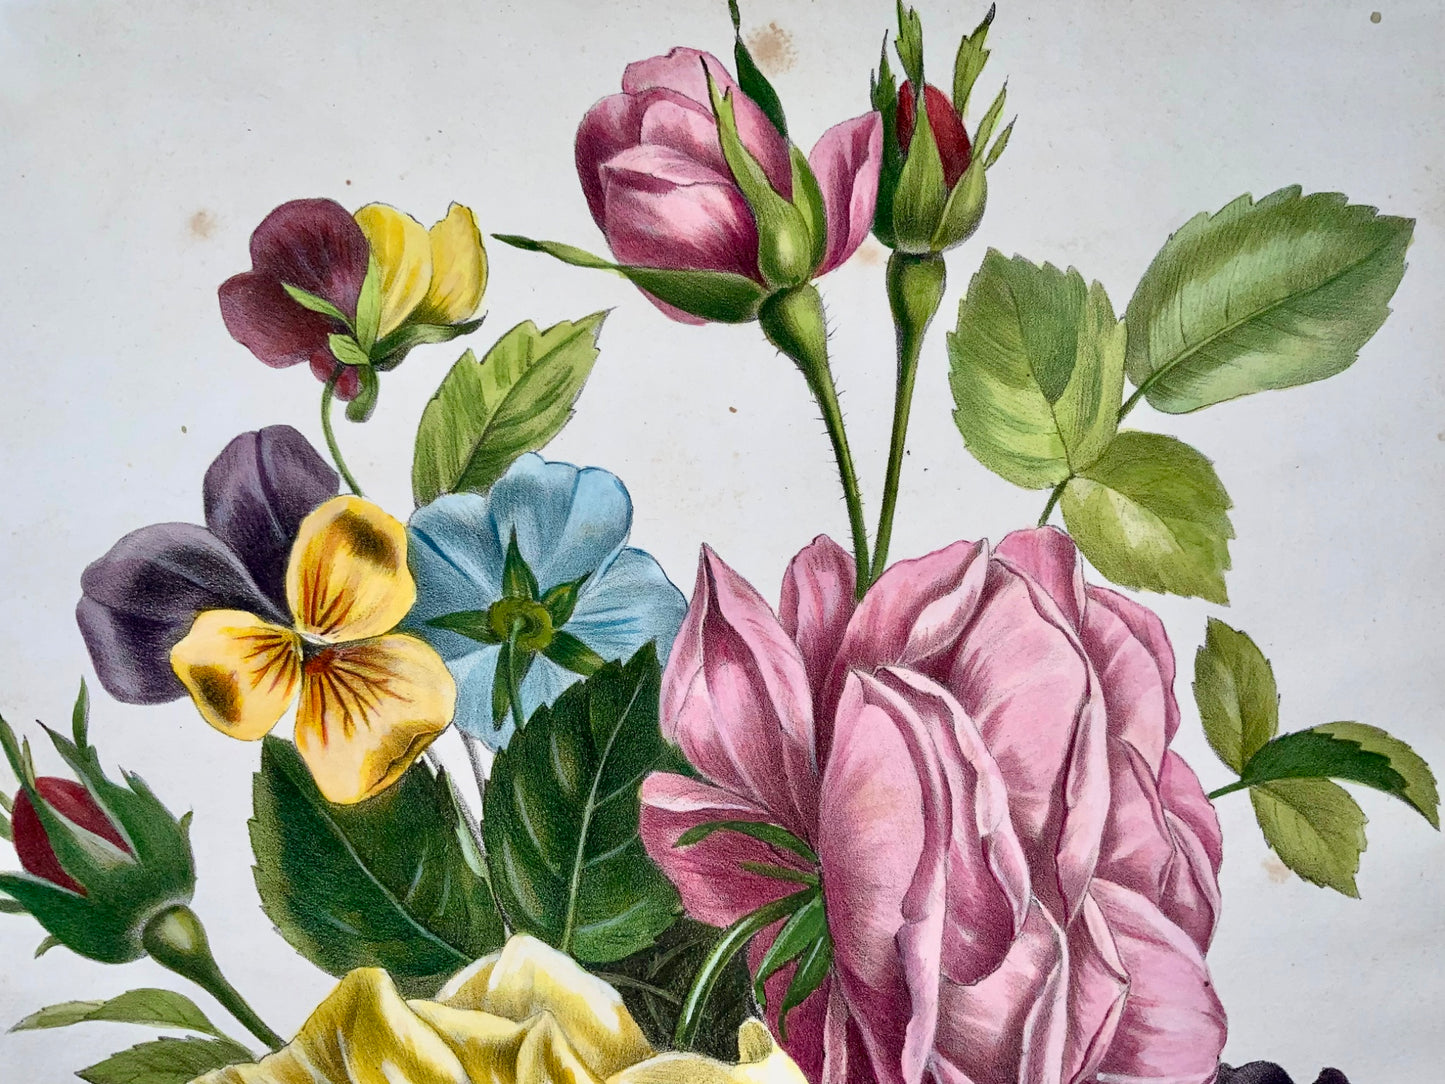 1840c Rose e viole del pensiero, Jullien, Bequet, grande litografia in pietra colorata a mano, botanica